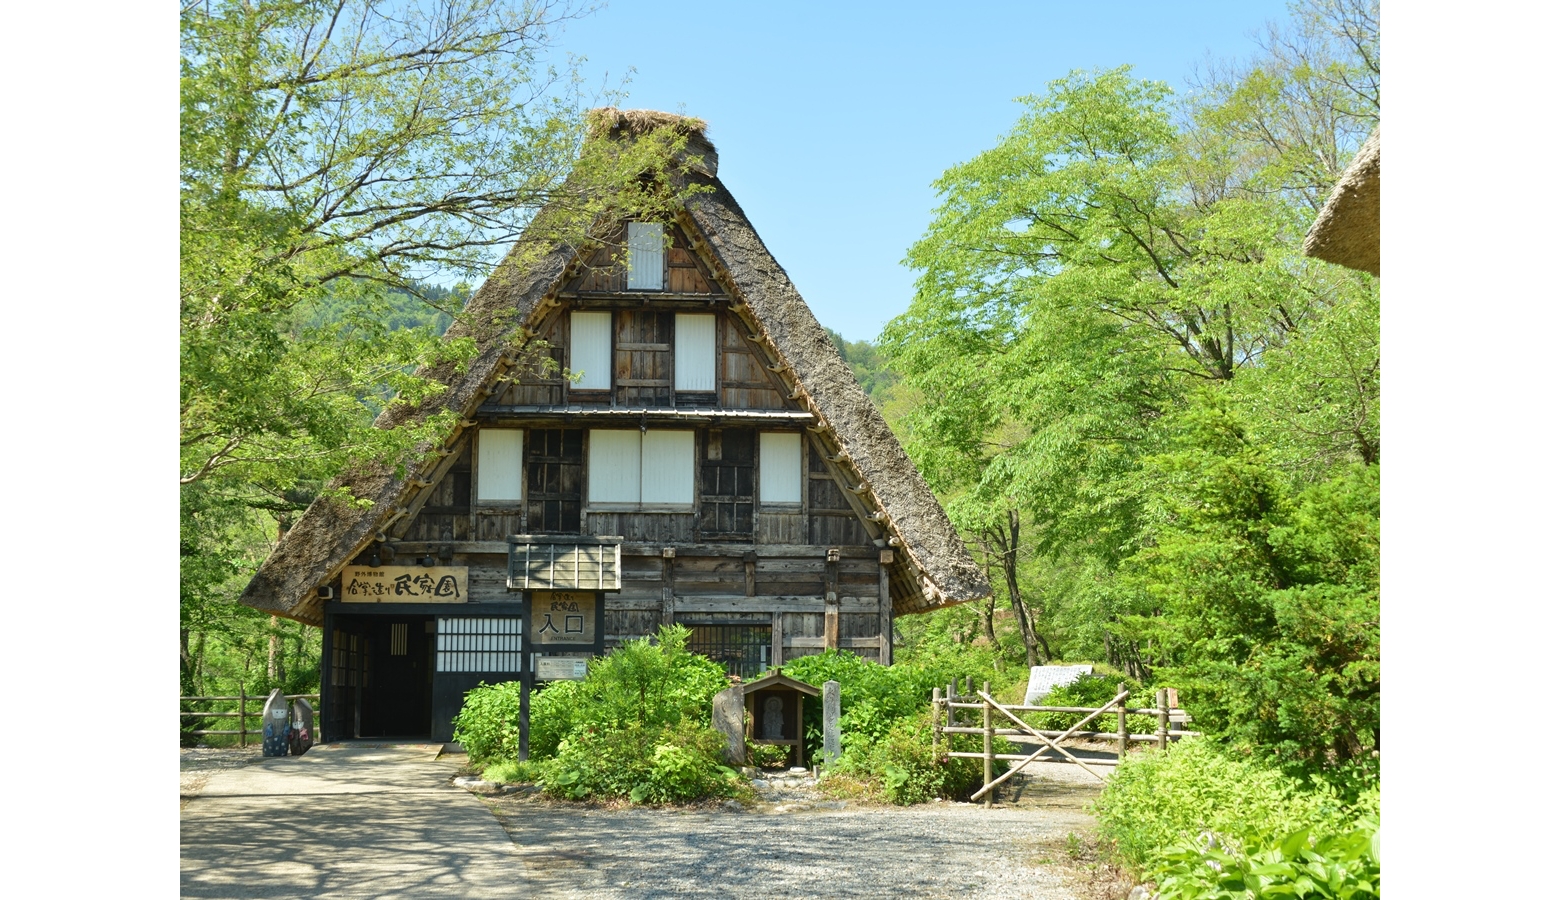 野外美術館ランキング1位は、岐阜県白川村の「合掌造り民家園」1